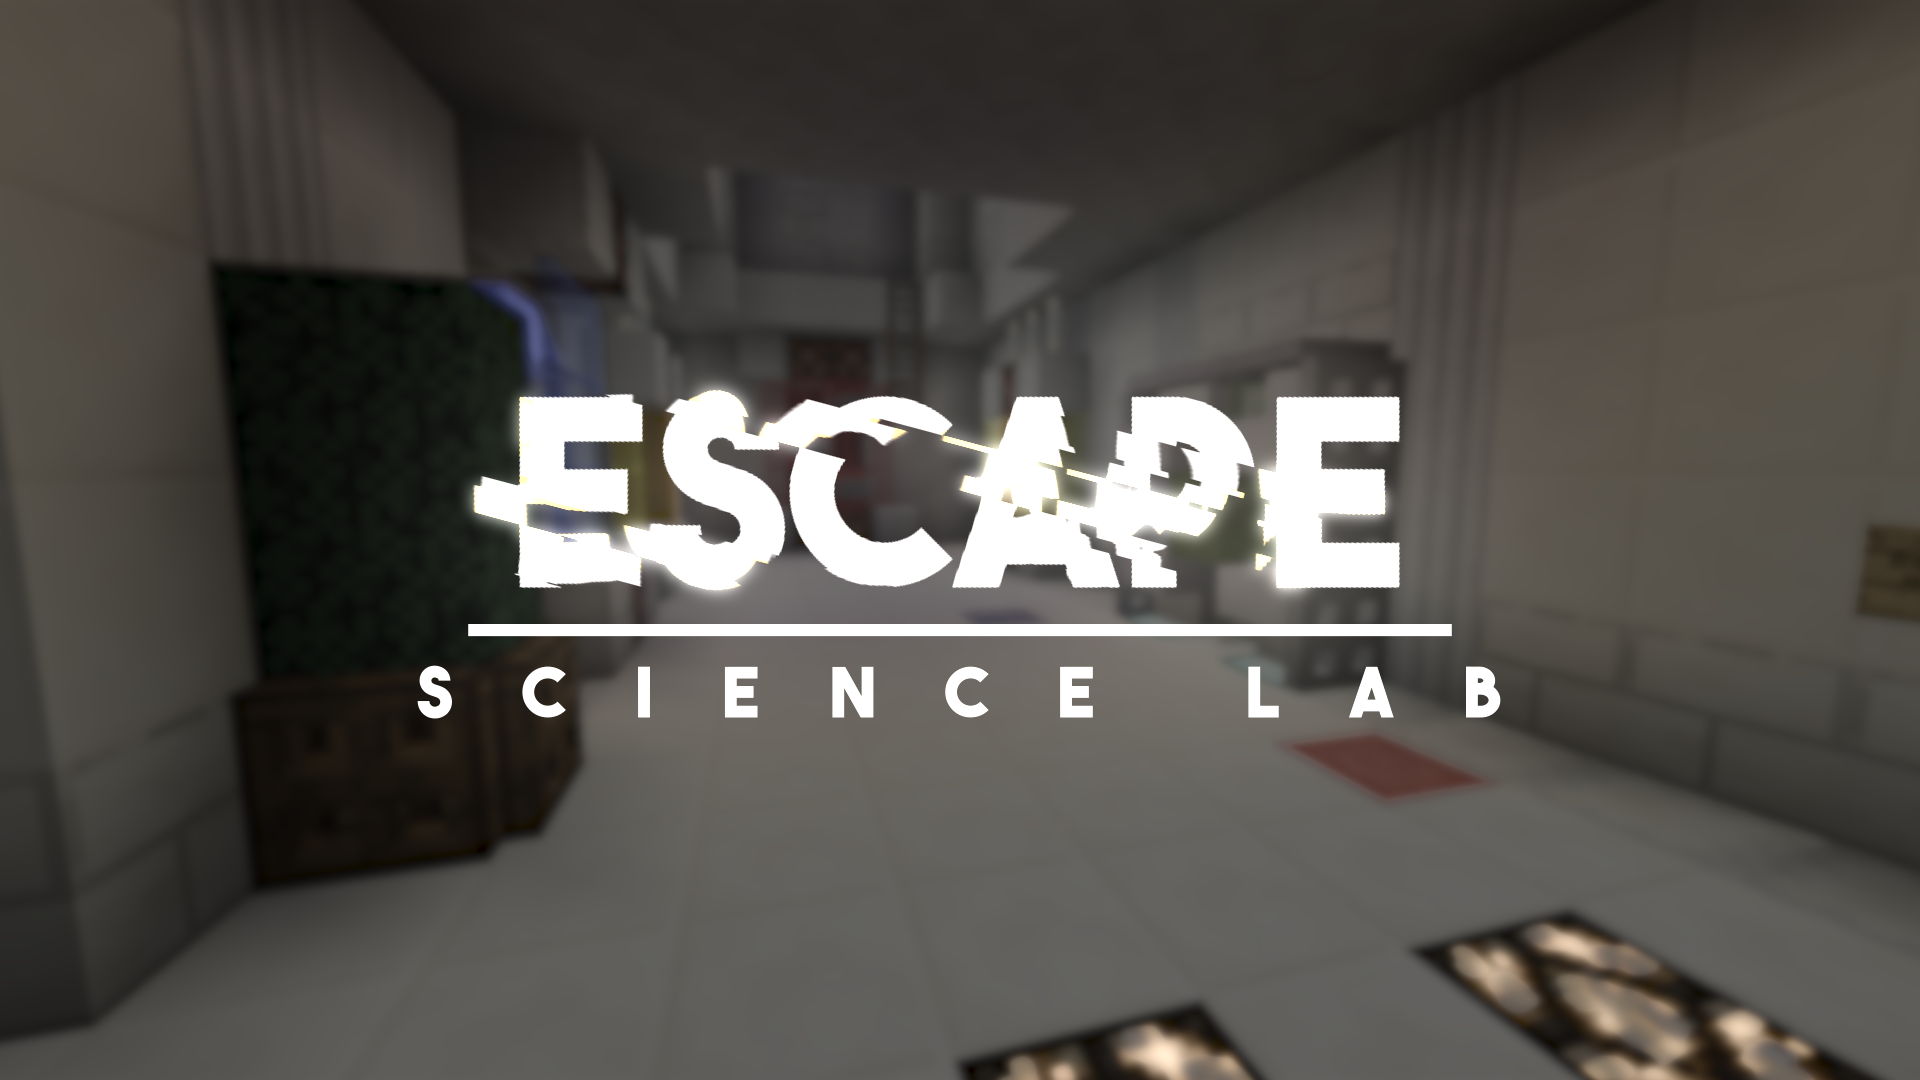 Escape: Lab